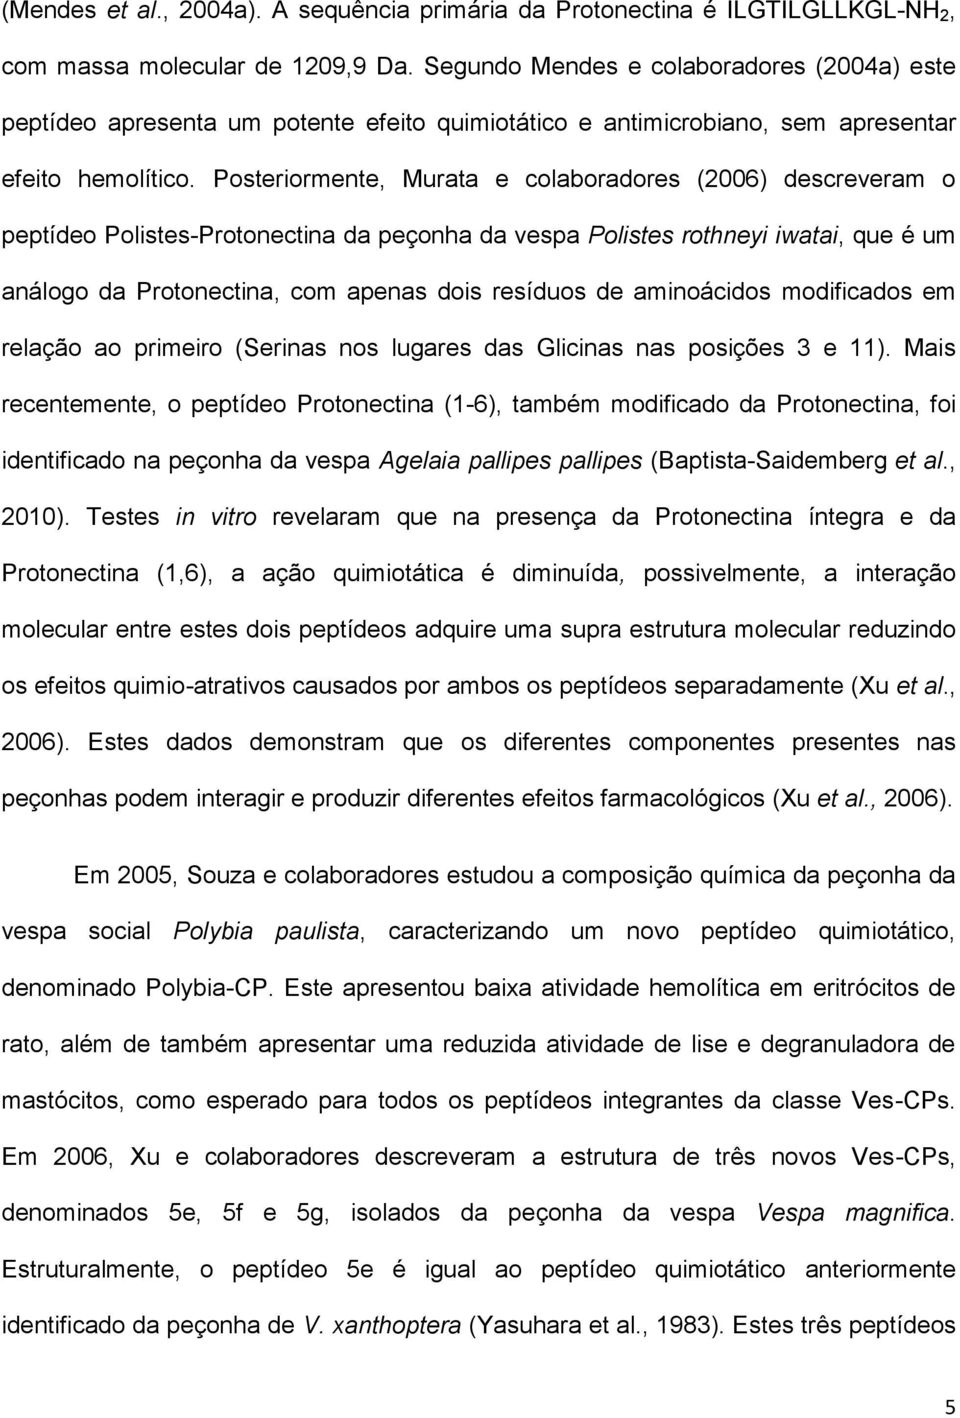 Posteriormente, Murata e colaboradores (2006) descreveram o peptídeo Polistes-Protonectina da peçonha da vespa Polistes rothneyi iwatai, que é um análogo da Protonectina, com apenas dois resíduos de